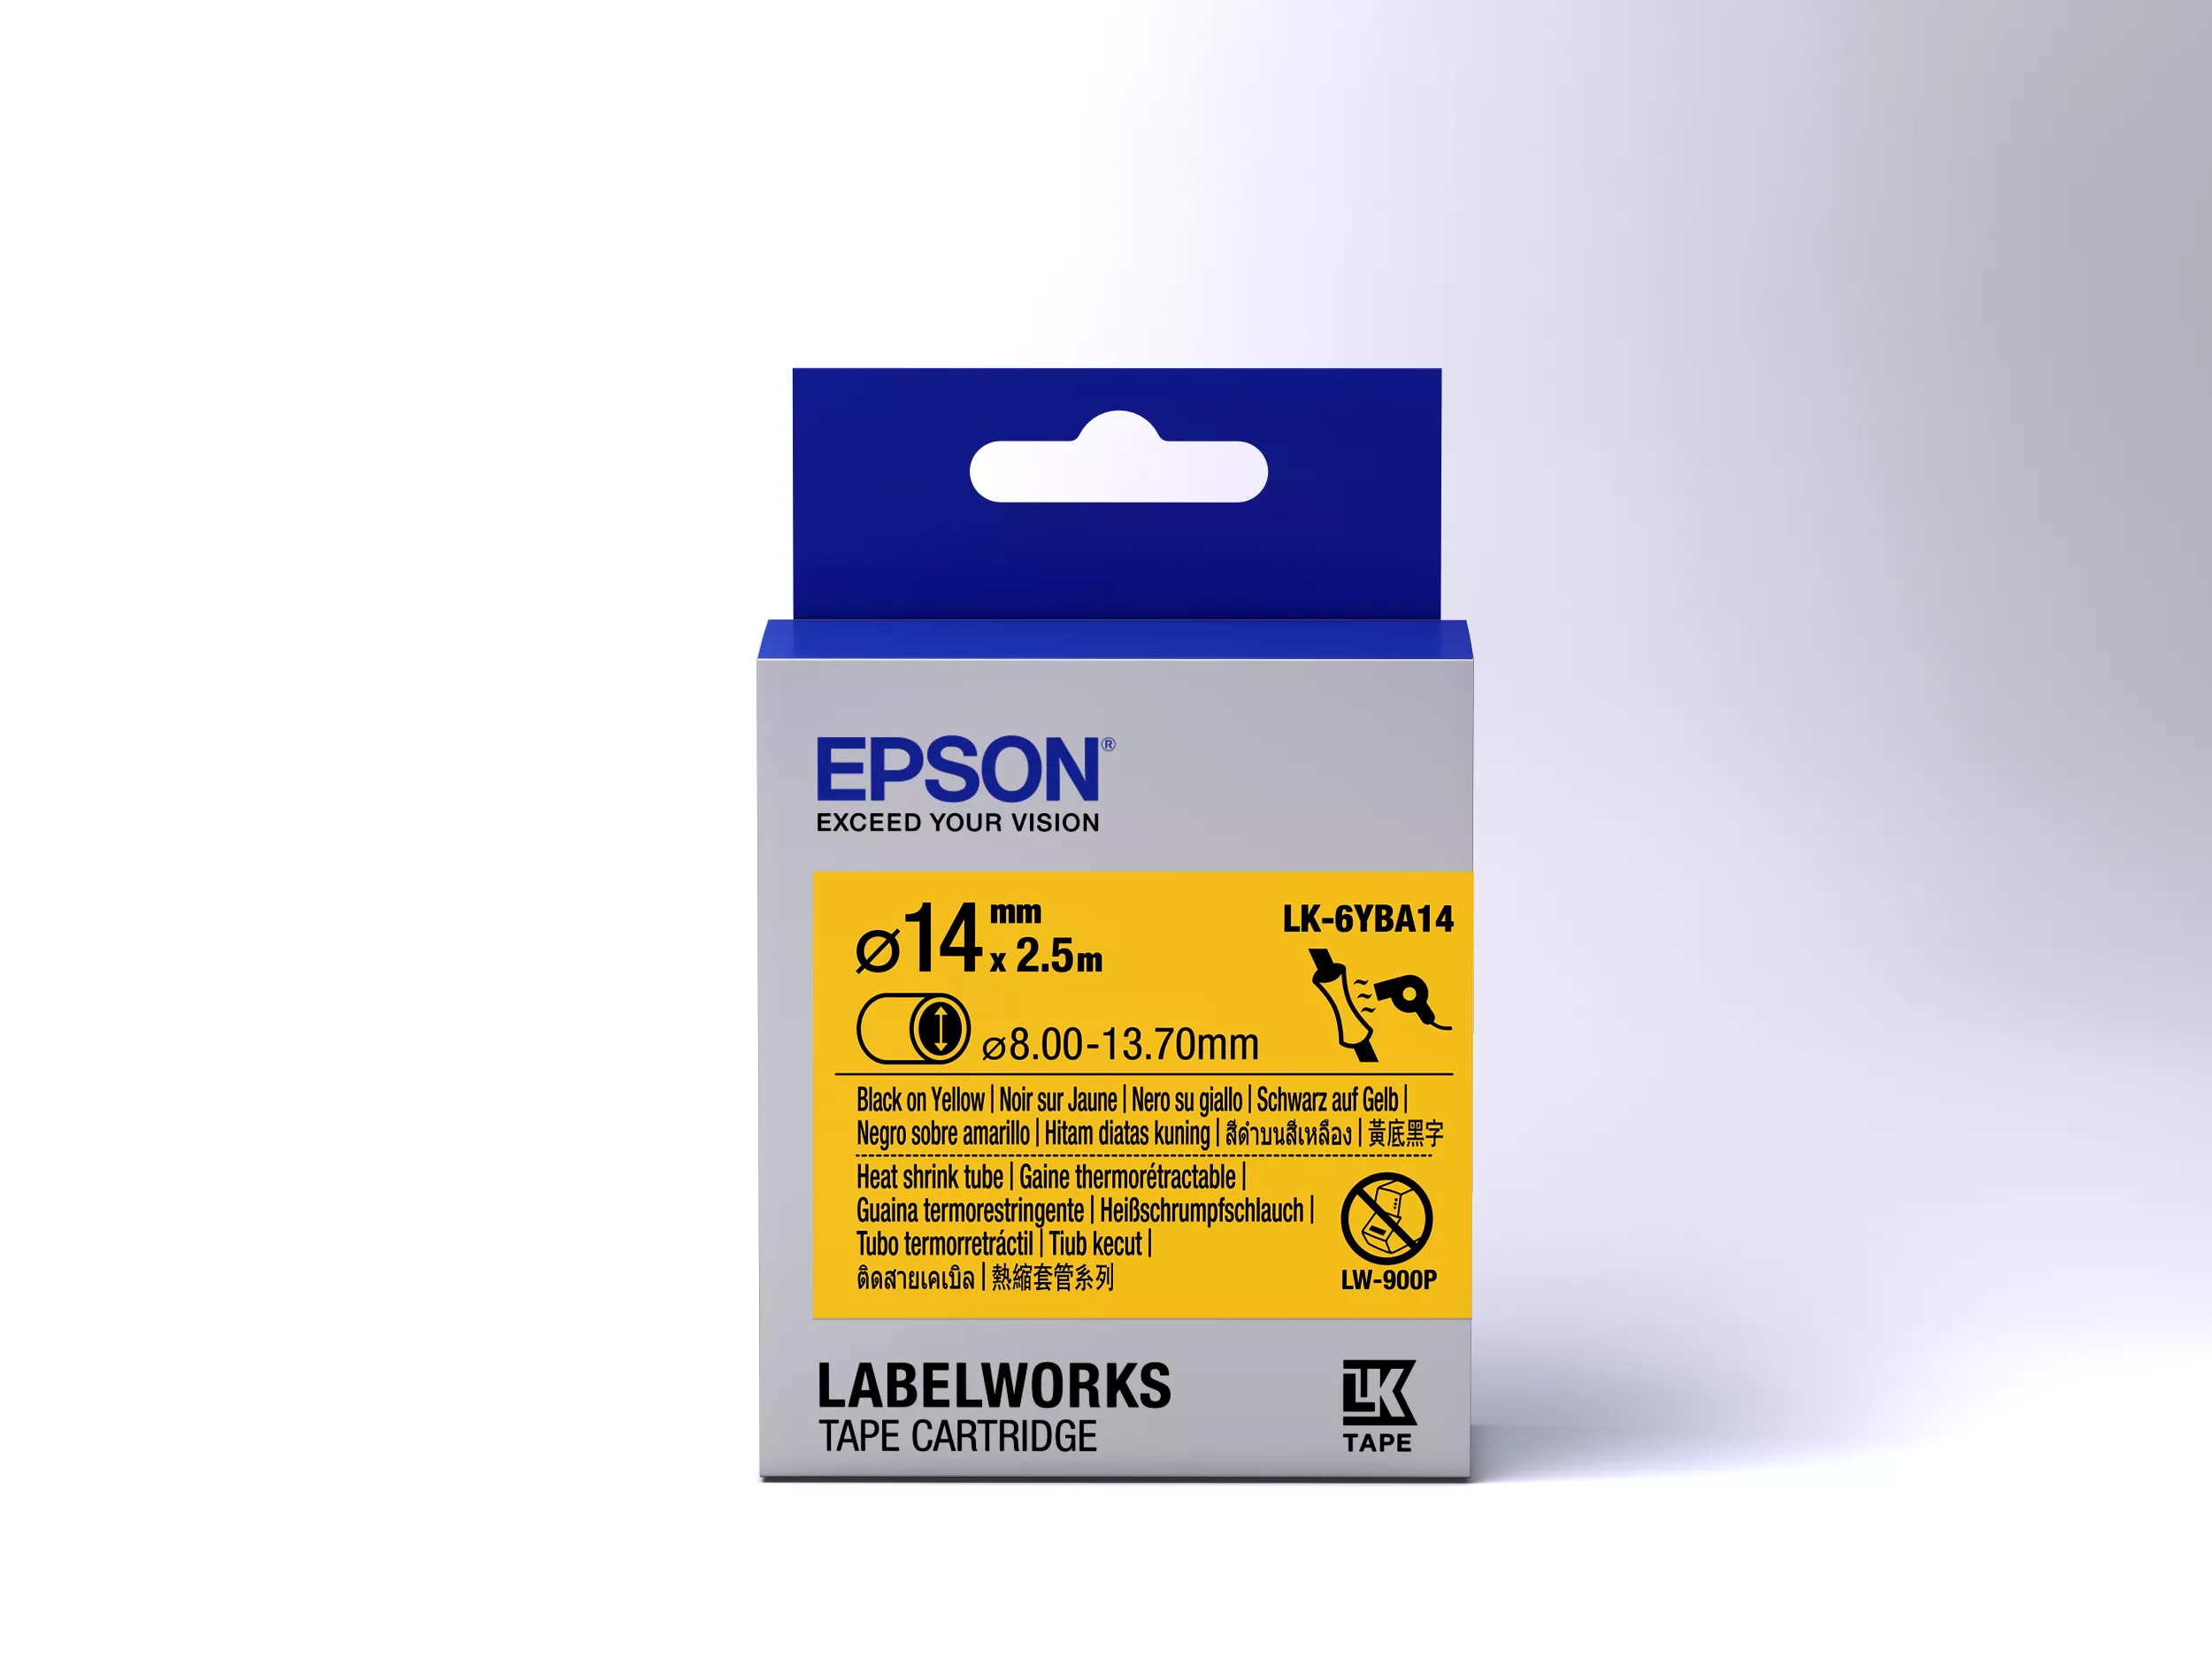 Vente EPSON Ruban LK-6YBA14 - Gaine thermorétractable HST Epson au meilleur prix - visuel 2